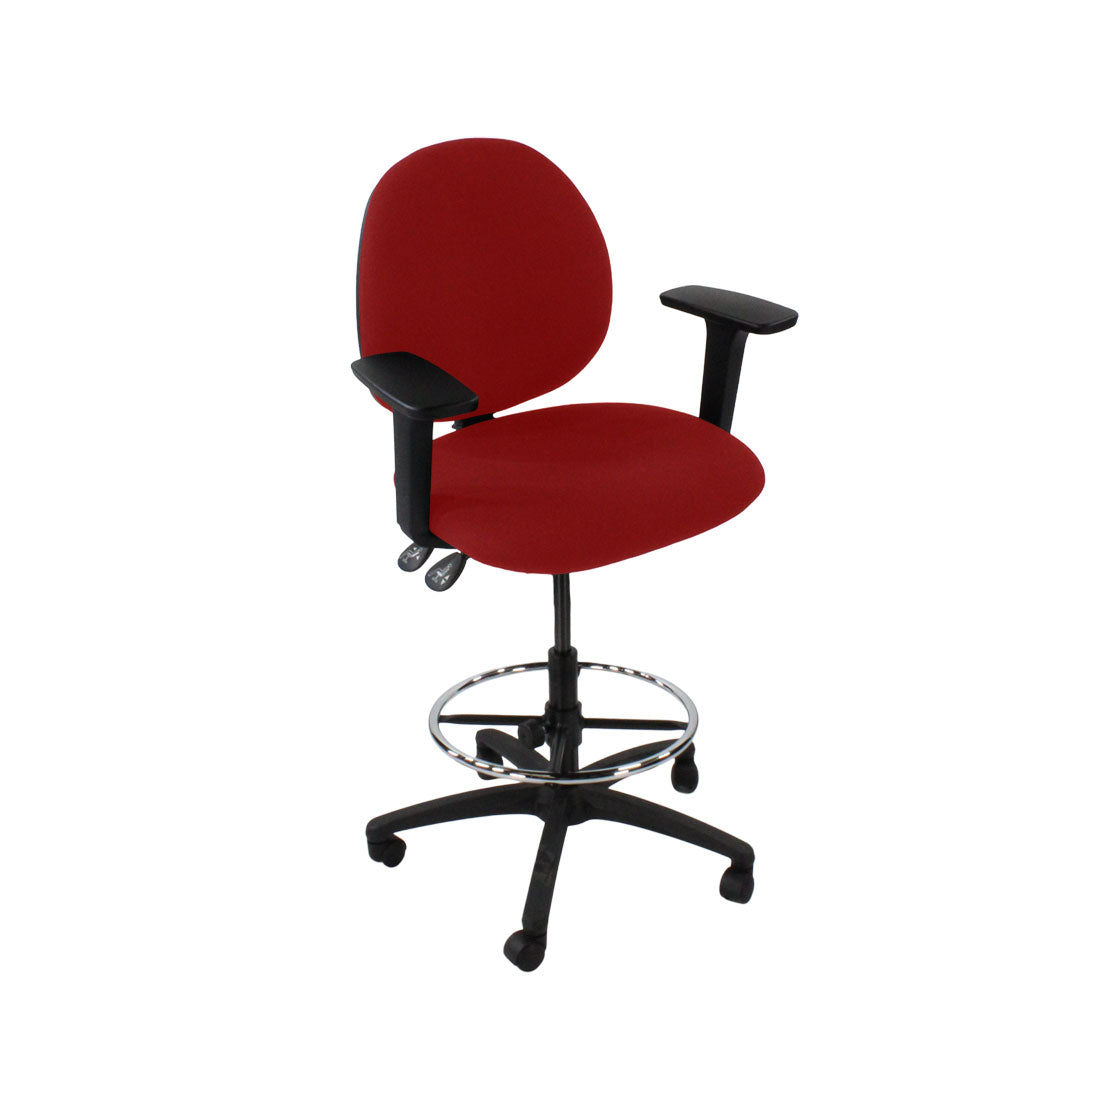 Inhaltsverzeichnis: Scoop Draftsman Chair aus rotem Stoff – generalüberholt